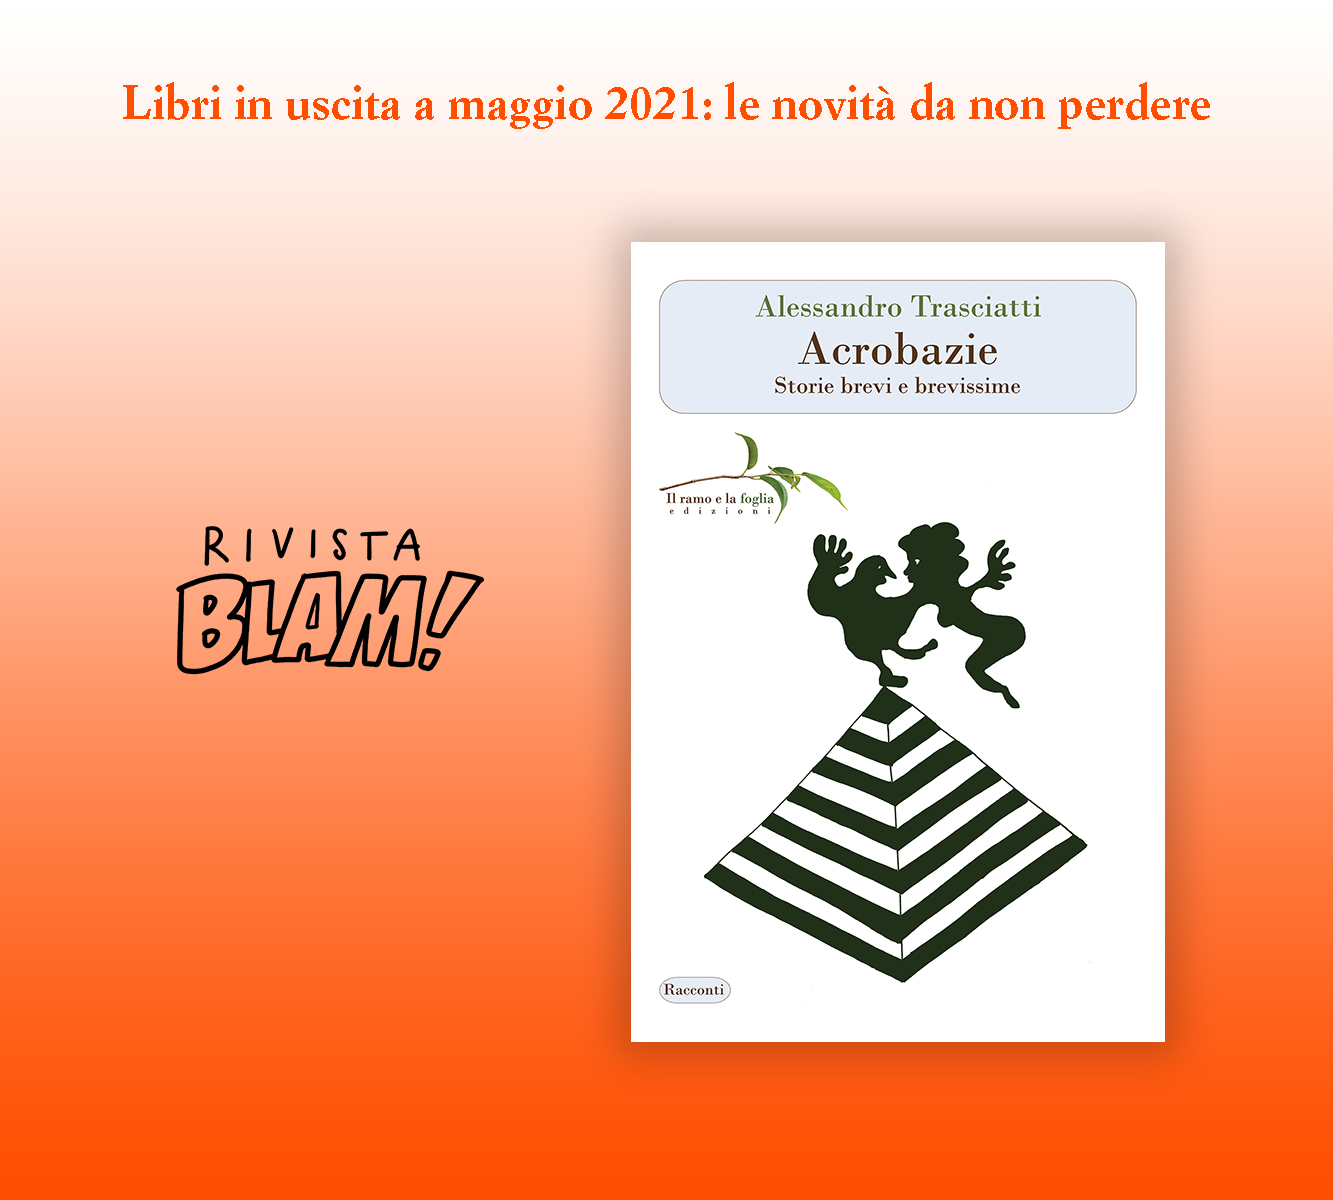 Logo della rivista Blam e copertina di “Acrobazie”